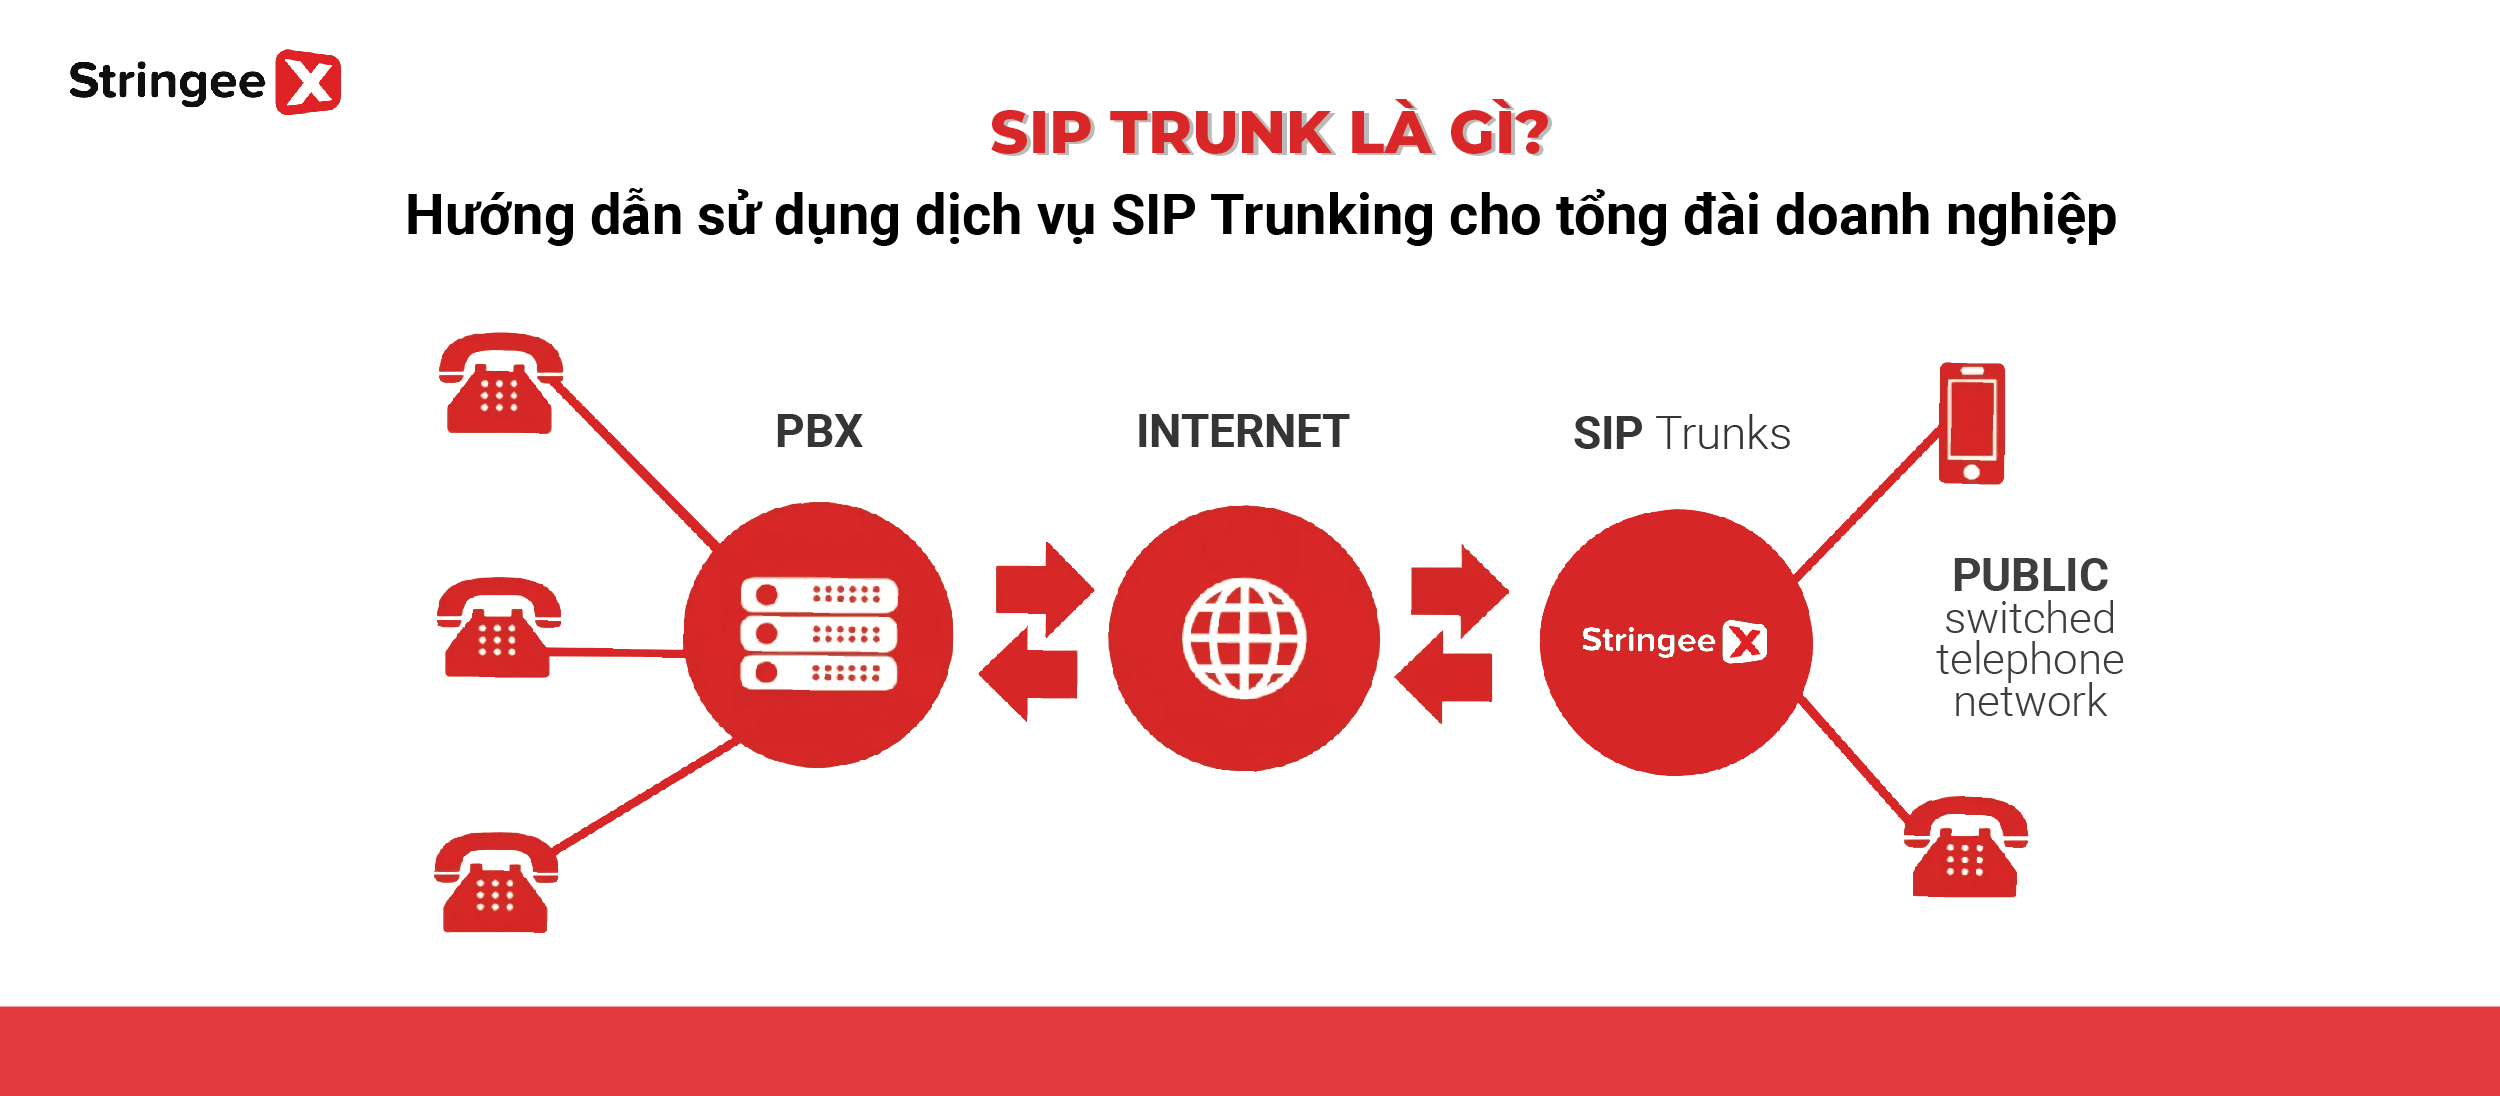 SIP Trunk là gì? Tìm hiểu về công nghệ viễn thông hiện đại